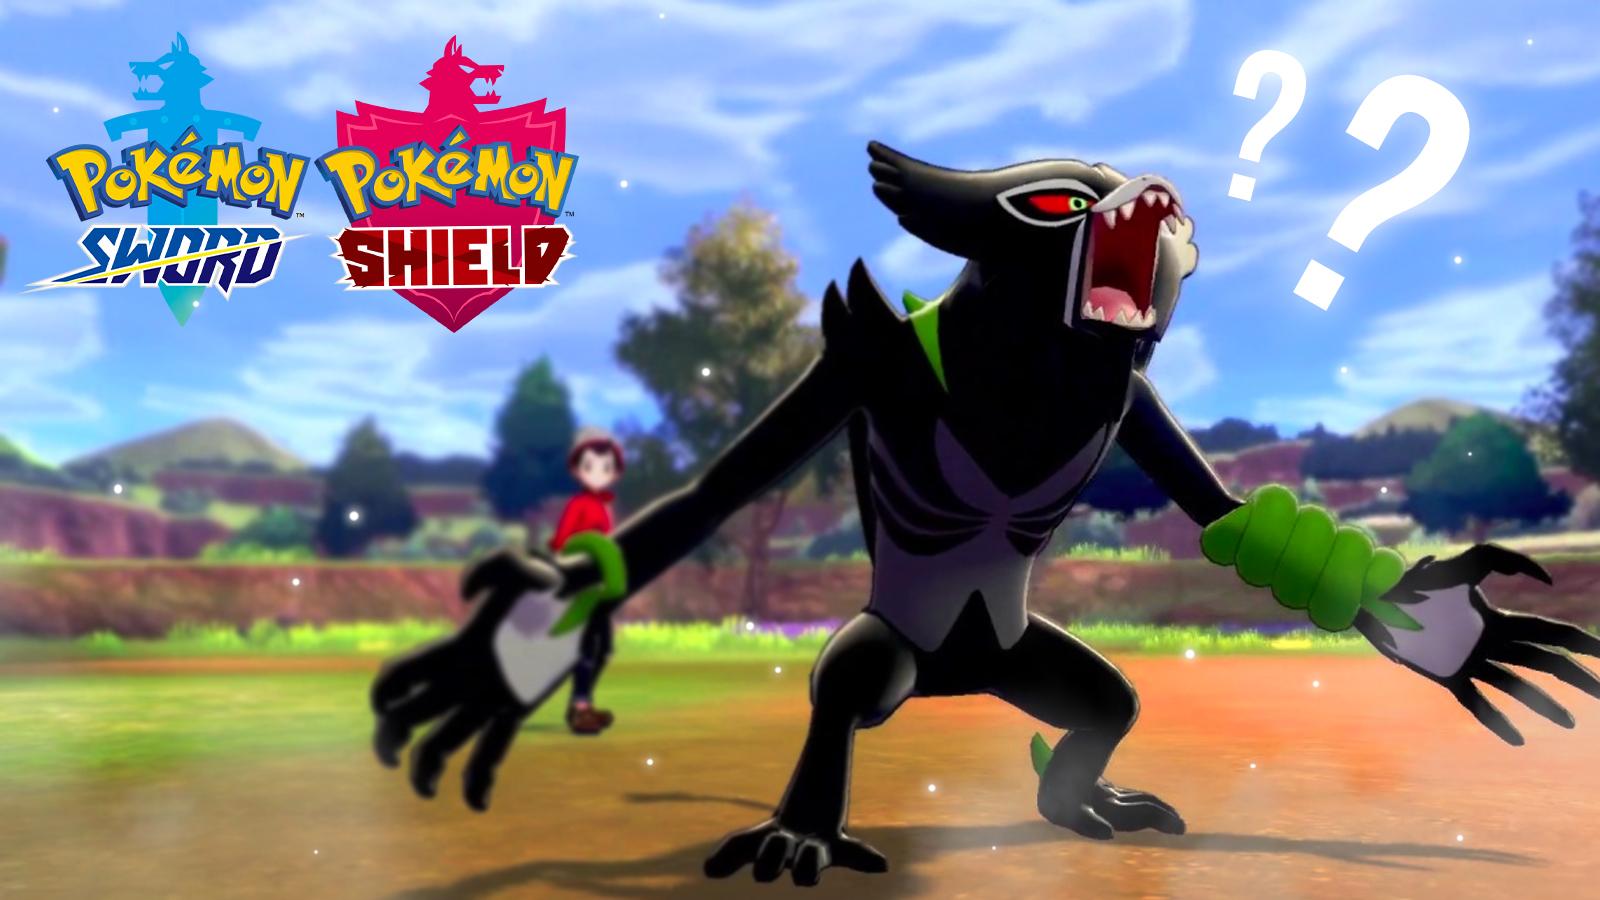 Pokémon Global News - Image of Zarude from the Pokémon Movie Coco